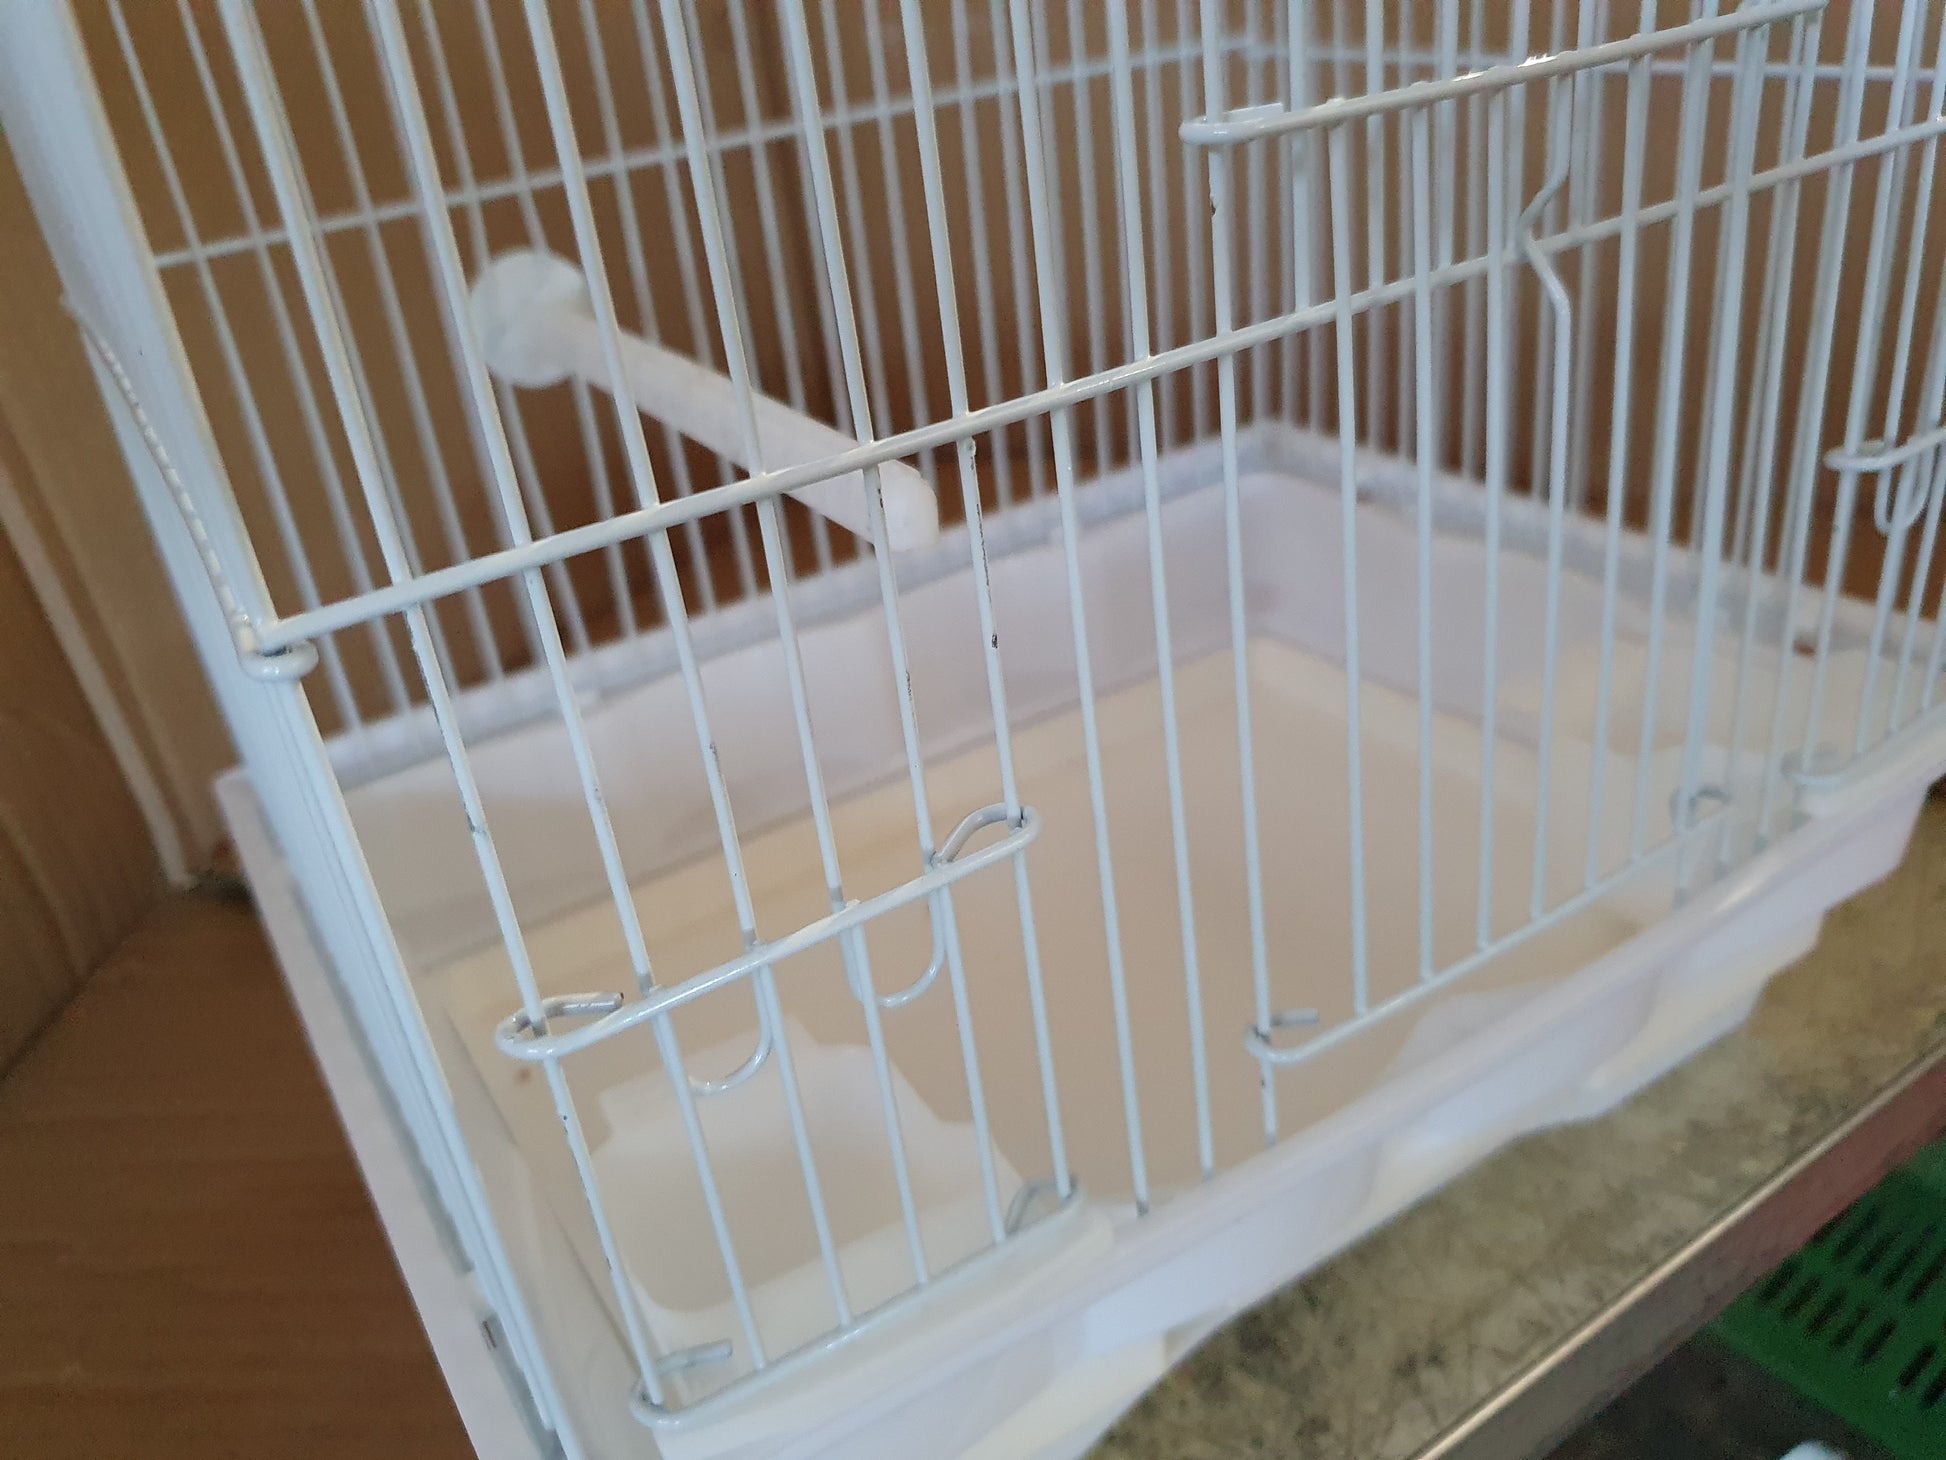 FOP - Cage Oiseaux sur Pied - Cristina Natura : 129,00 €